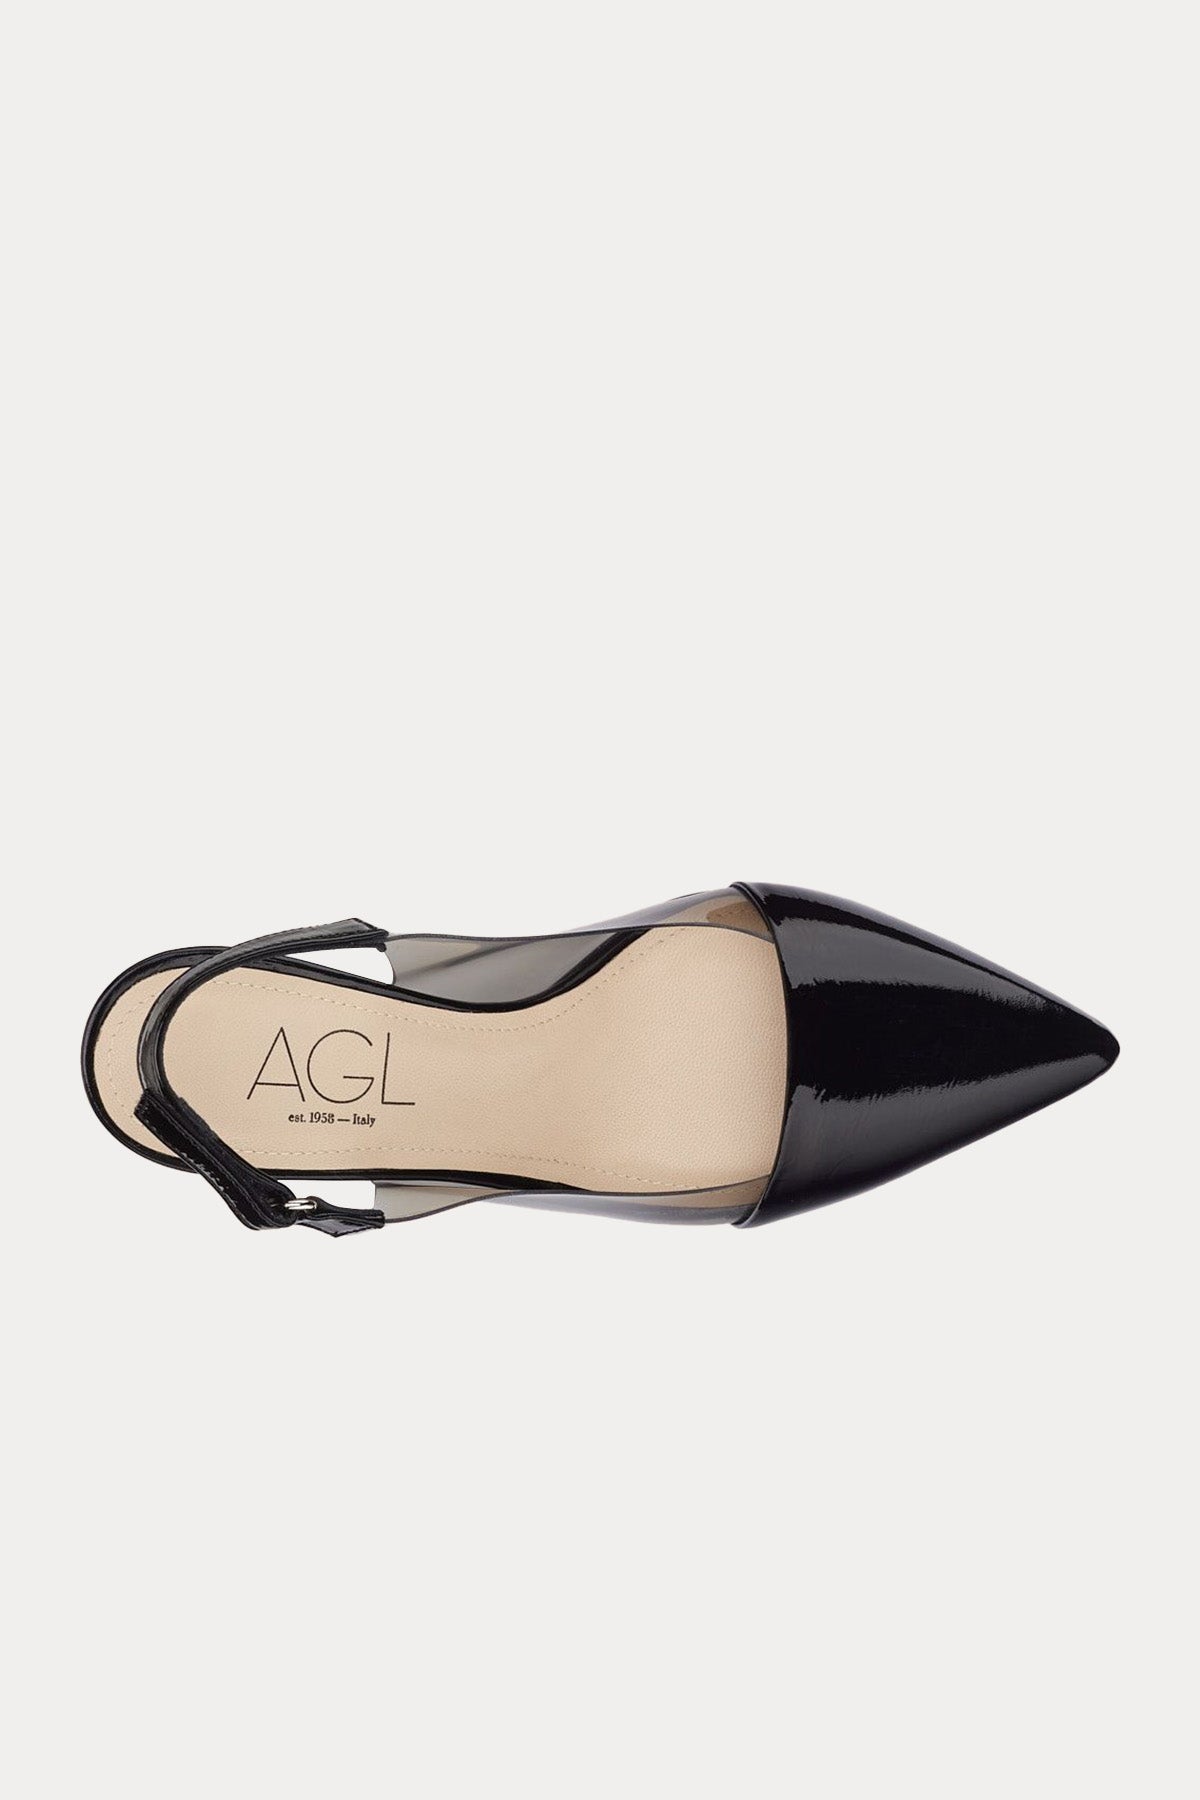 Agl Crystal Ide Şeffaf Detaylı Topuklu Deri Ayakkabı